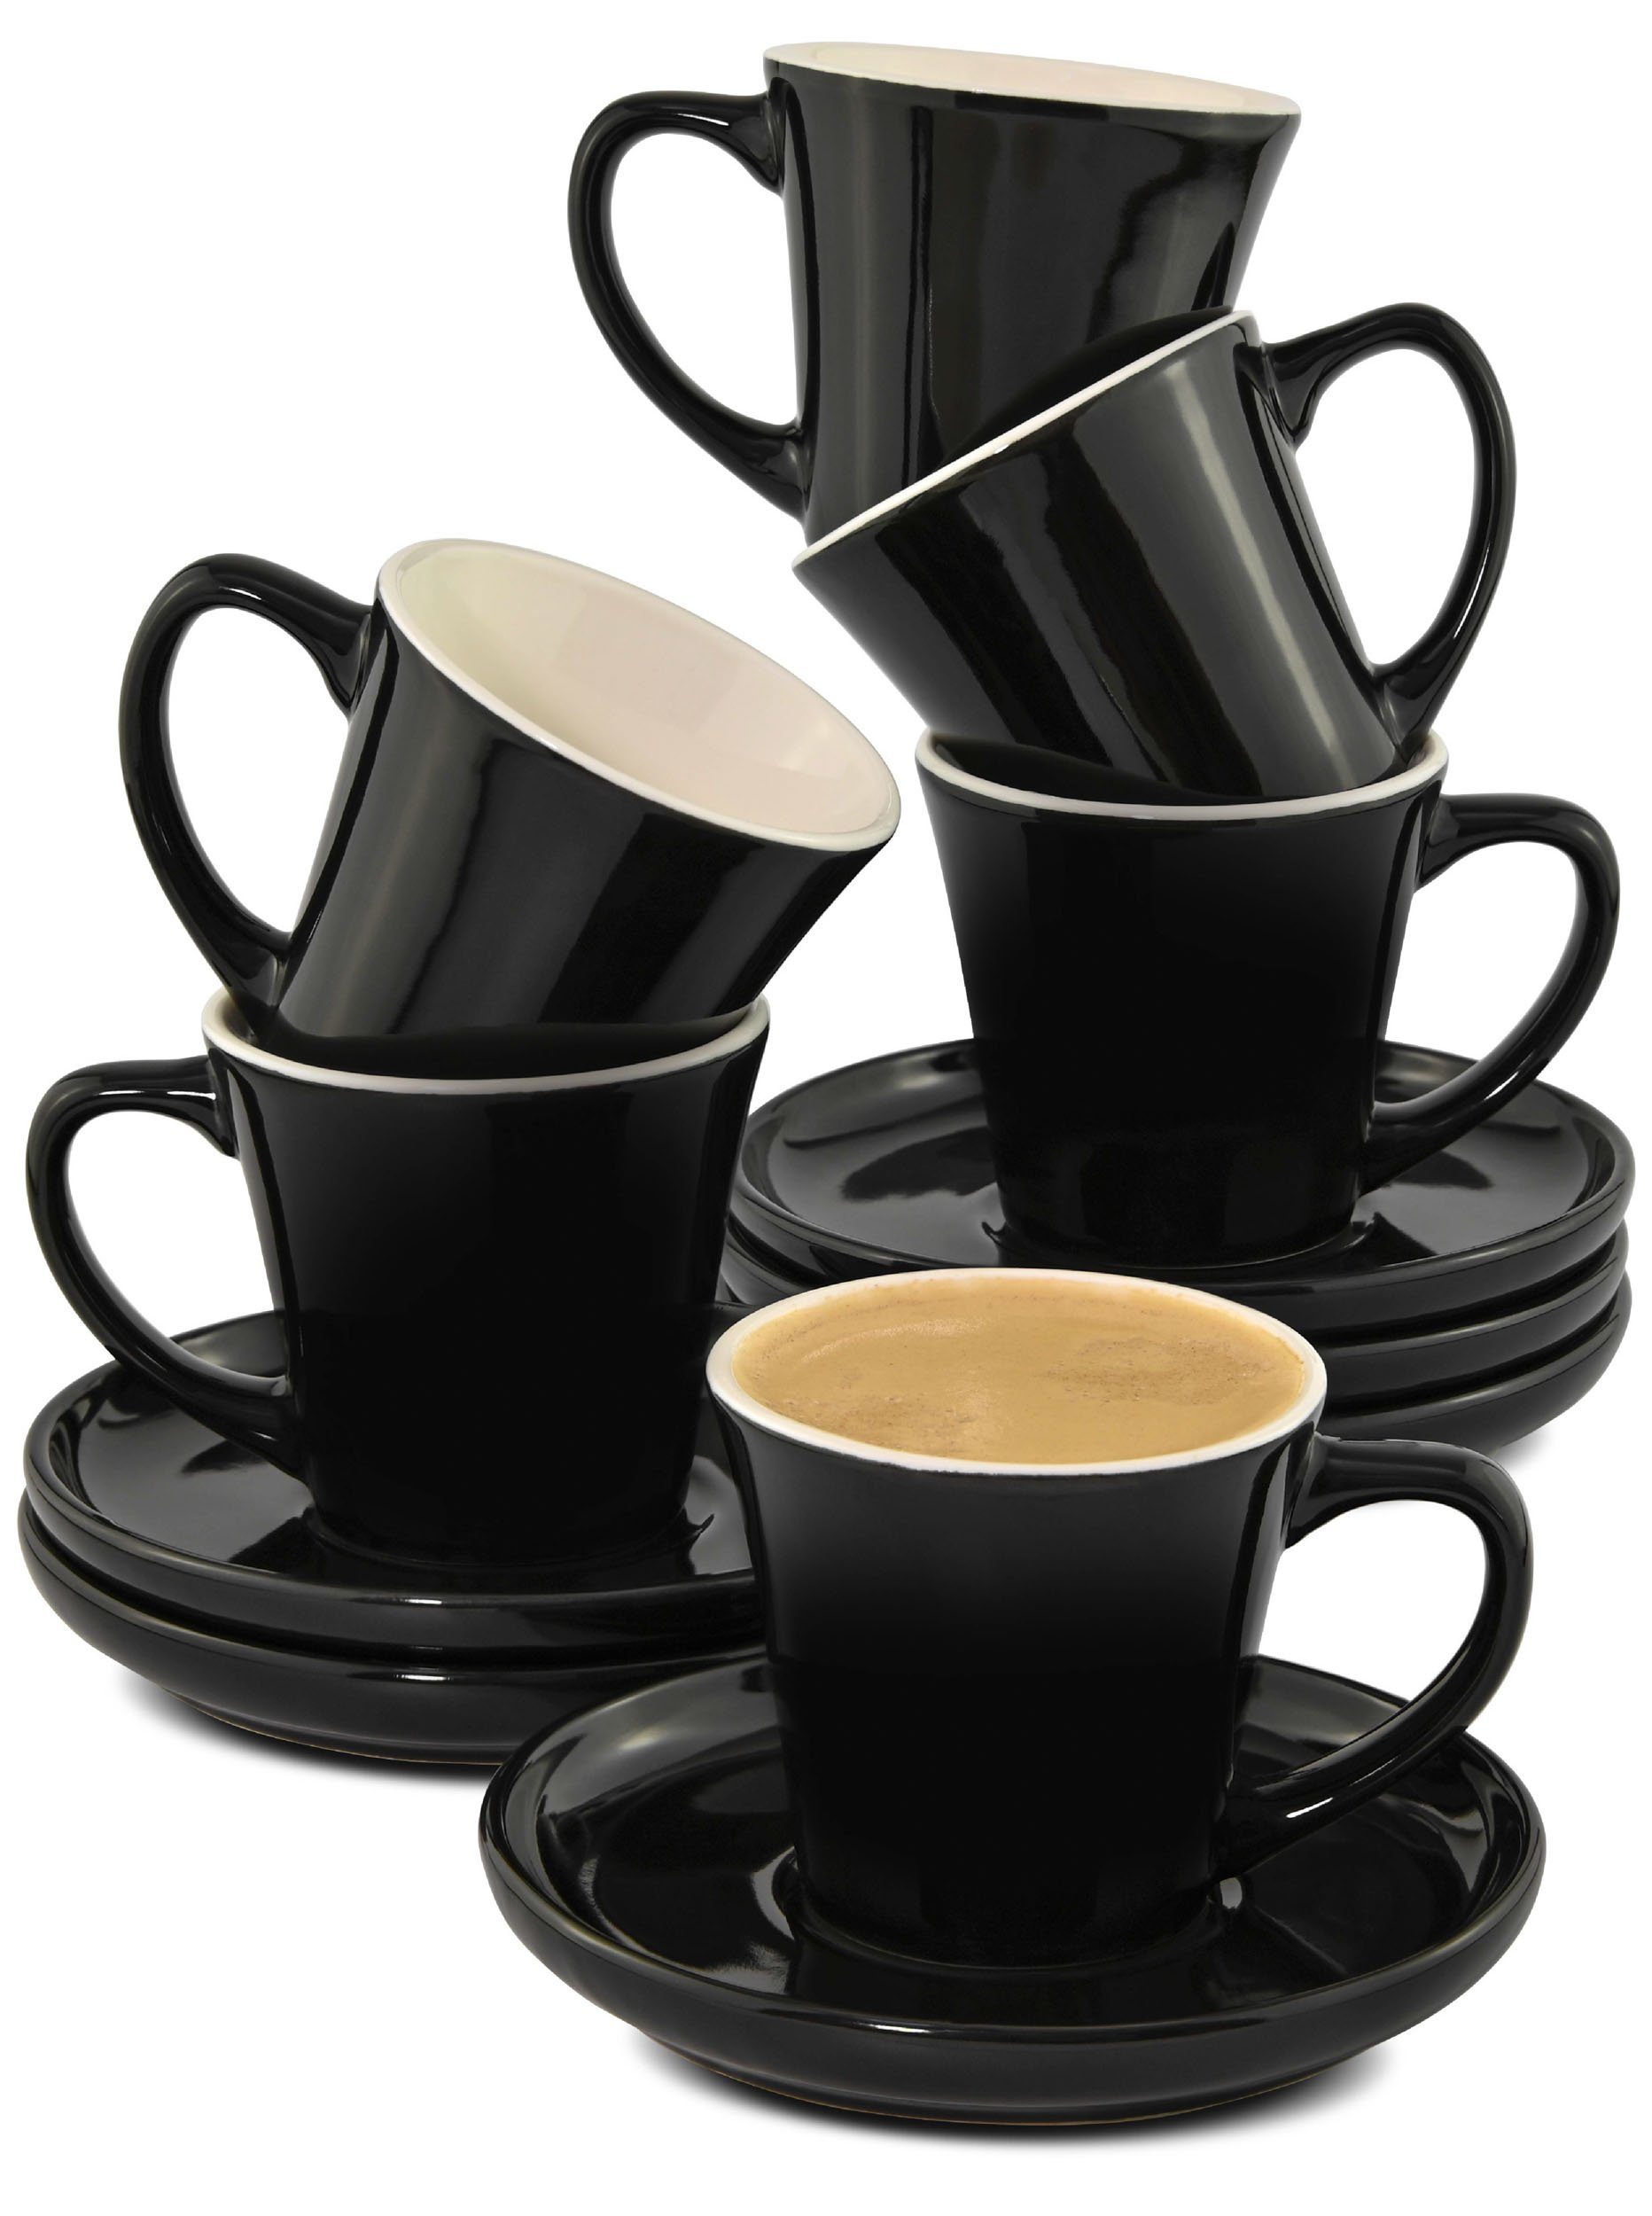 Cosumy Espressotasse 6er Set Чашки для еспресо Schwarz, Keramik, 70ml